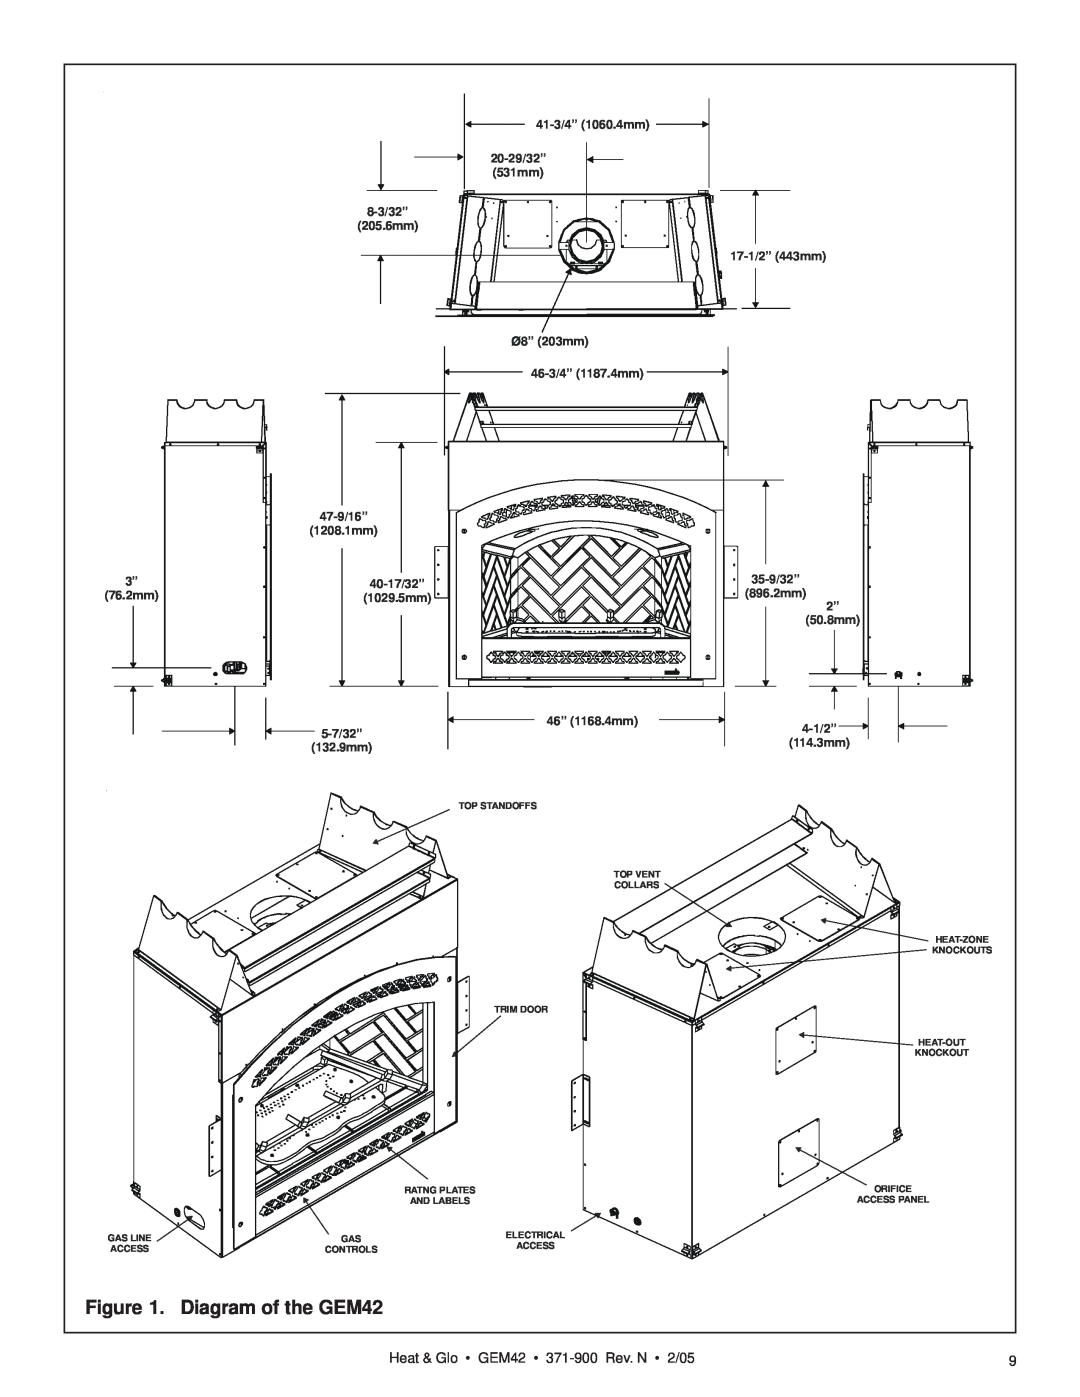 Heat & Glo LifeStyle manual Diagram of the GEM42, Heat & Glo GEM42 371-900 Rev. N 2/05 